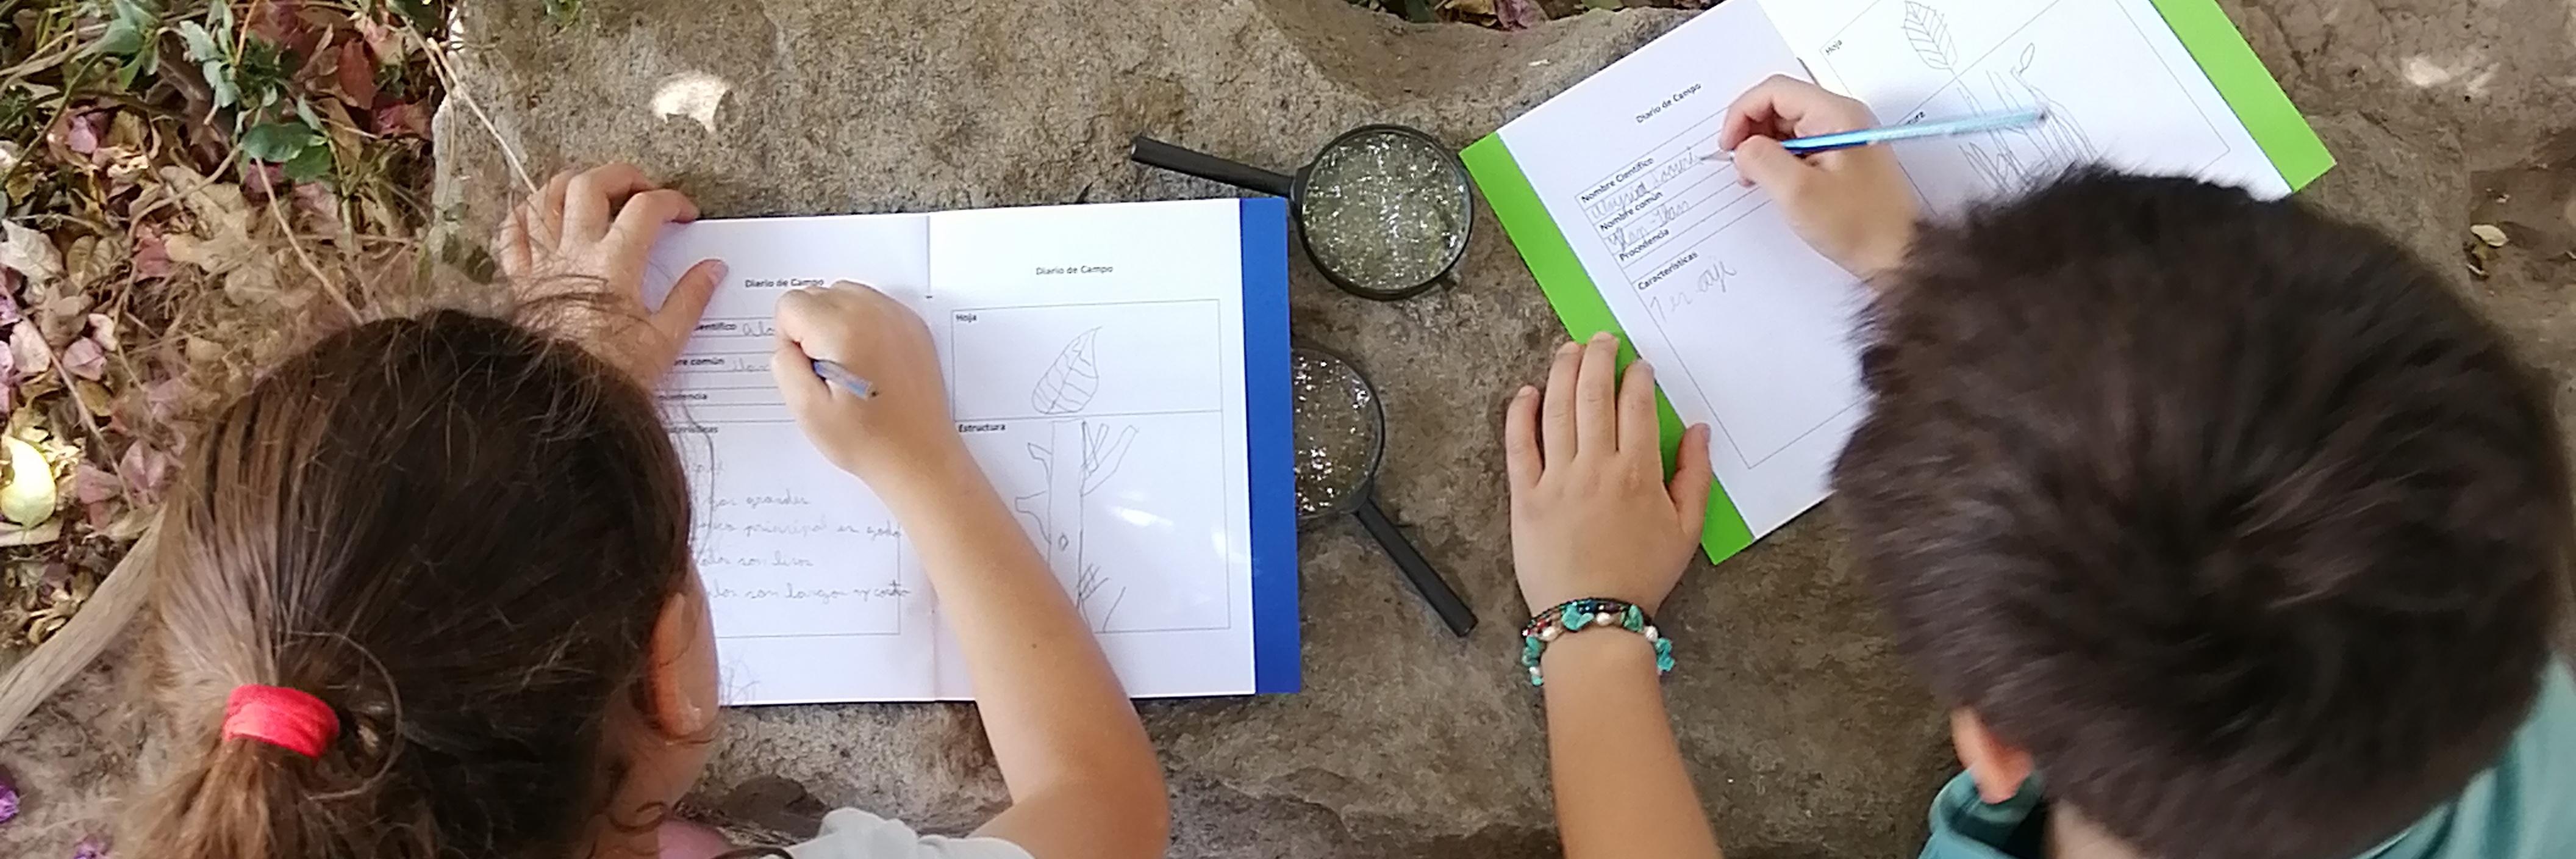 Imagen ilustra el boceto de un niño y una niña que estas escribiendo en un cuadernillo. De fondo se observan piedras grises, tierra y hojas que son parte de una enredadera verde.